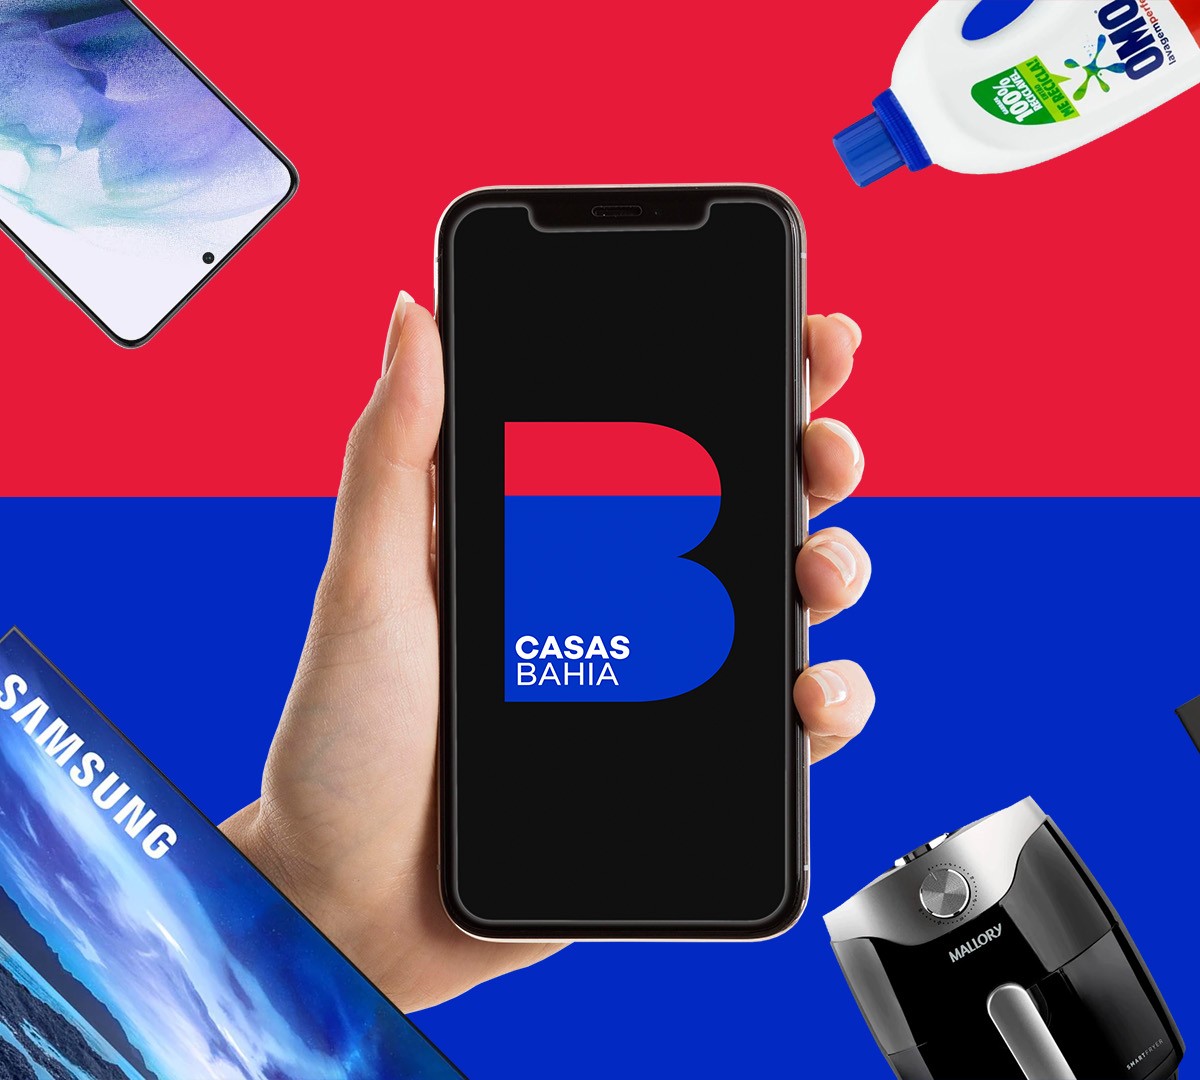 Compre os lançamentos Samsung, Apple, Motorola e Smart TVs na Casas Bahia 